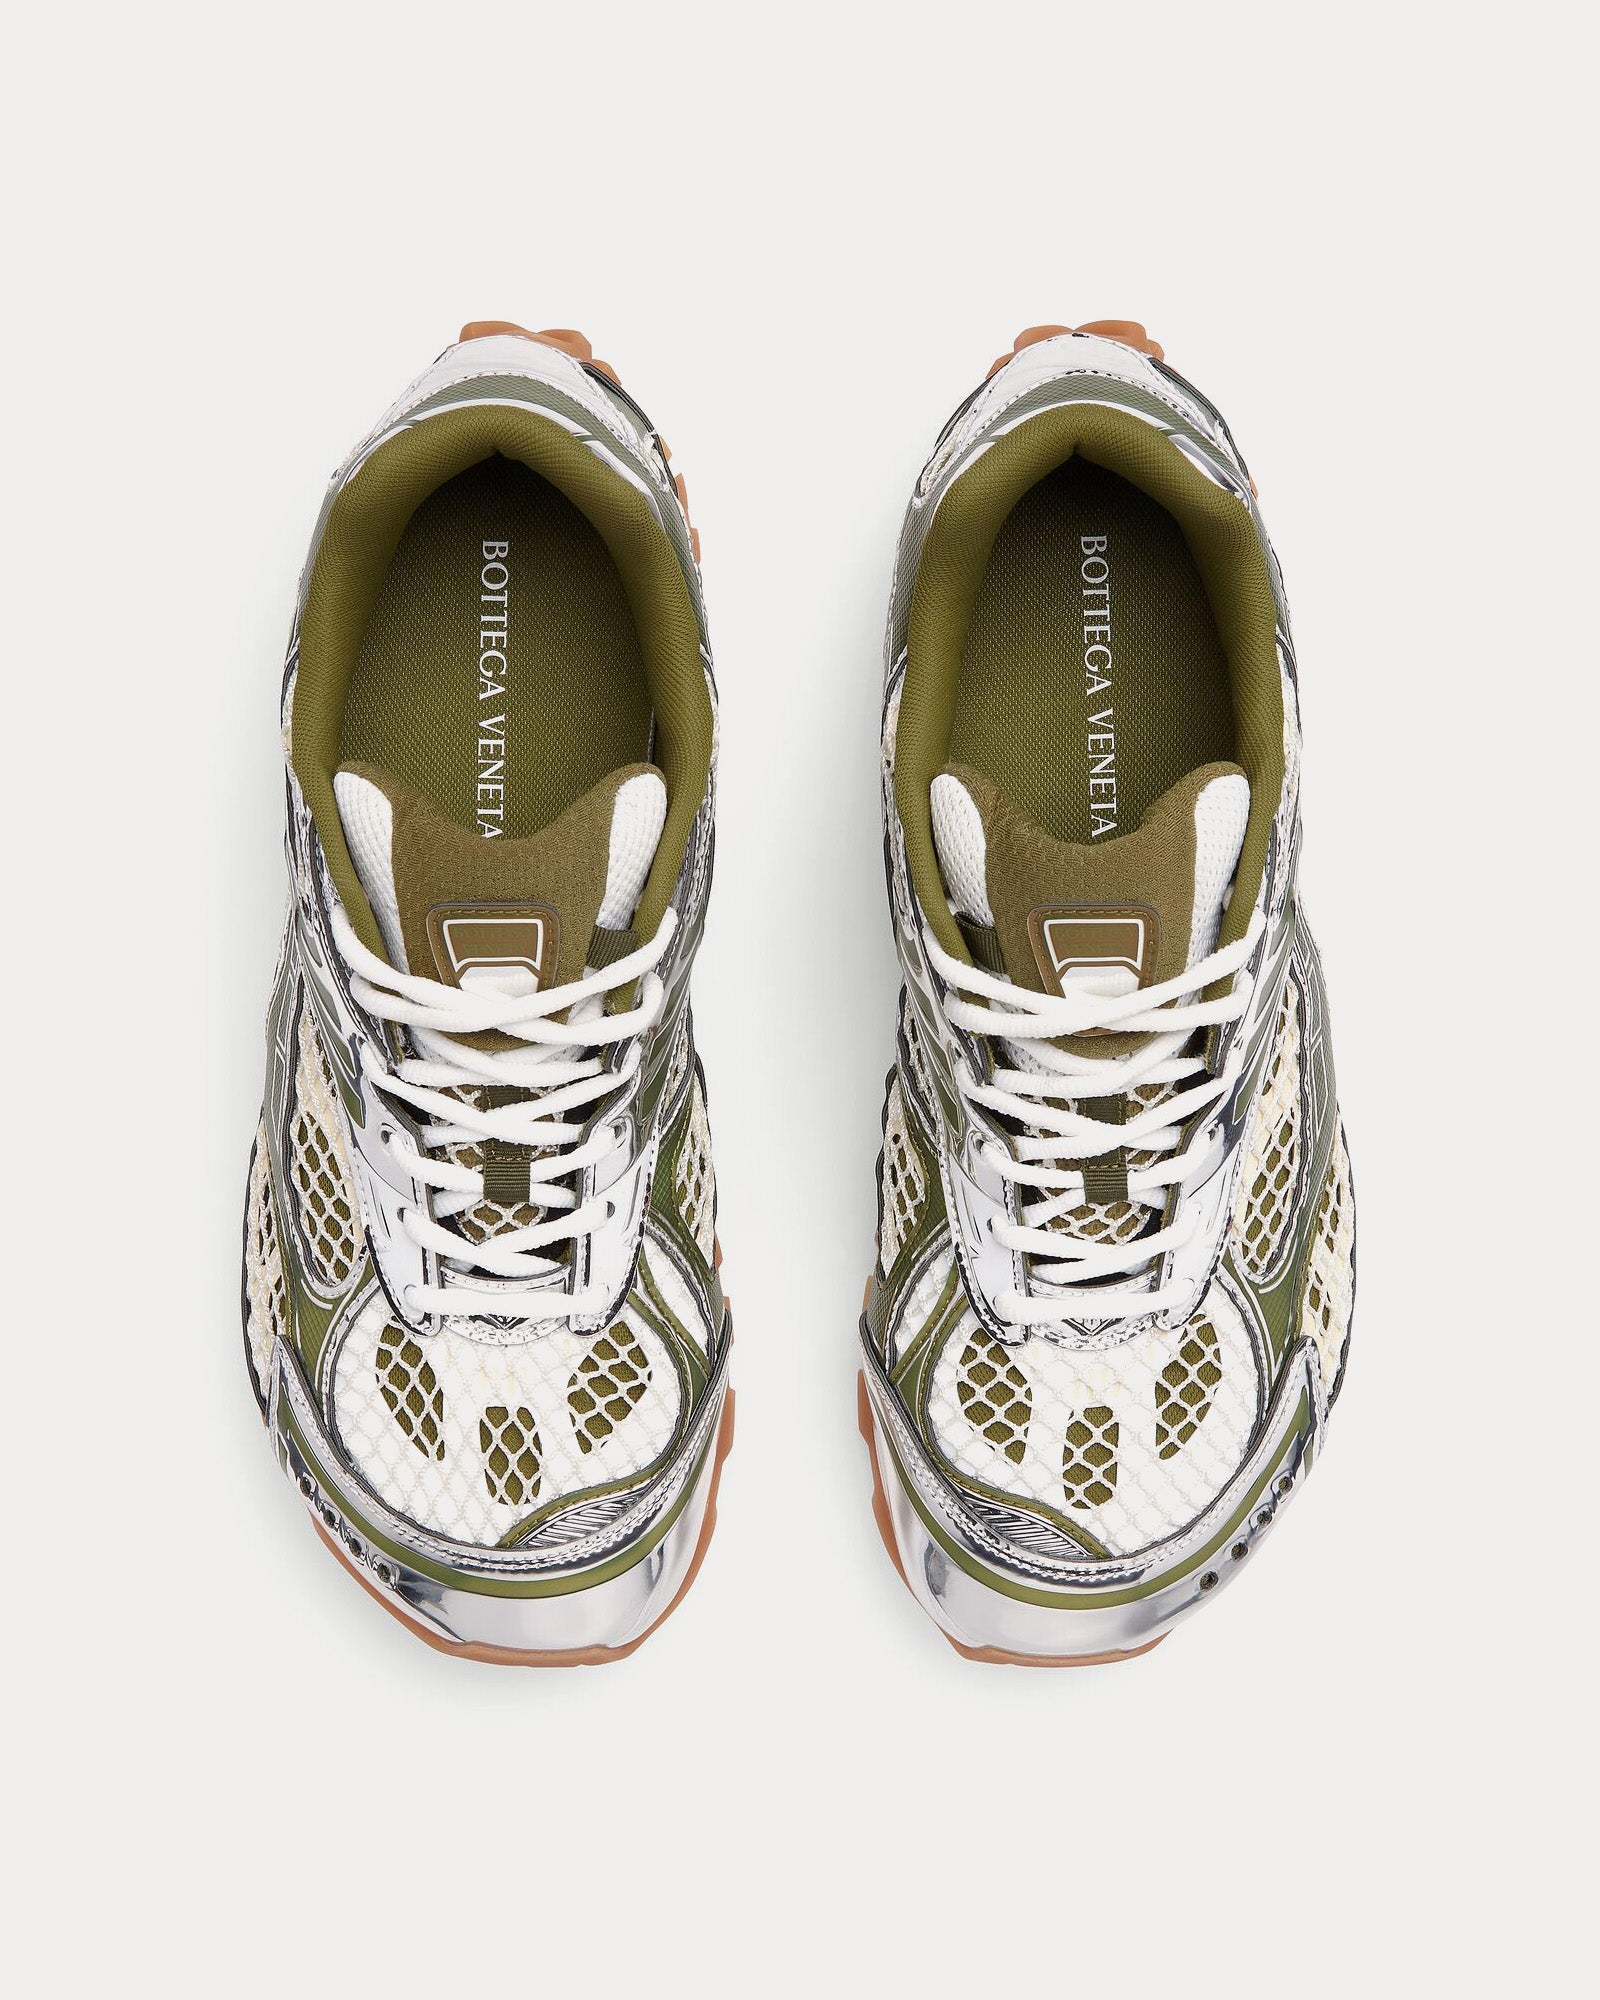 Bottega Veneta - Orbit Mud / White Low Top Sneakers